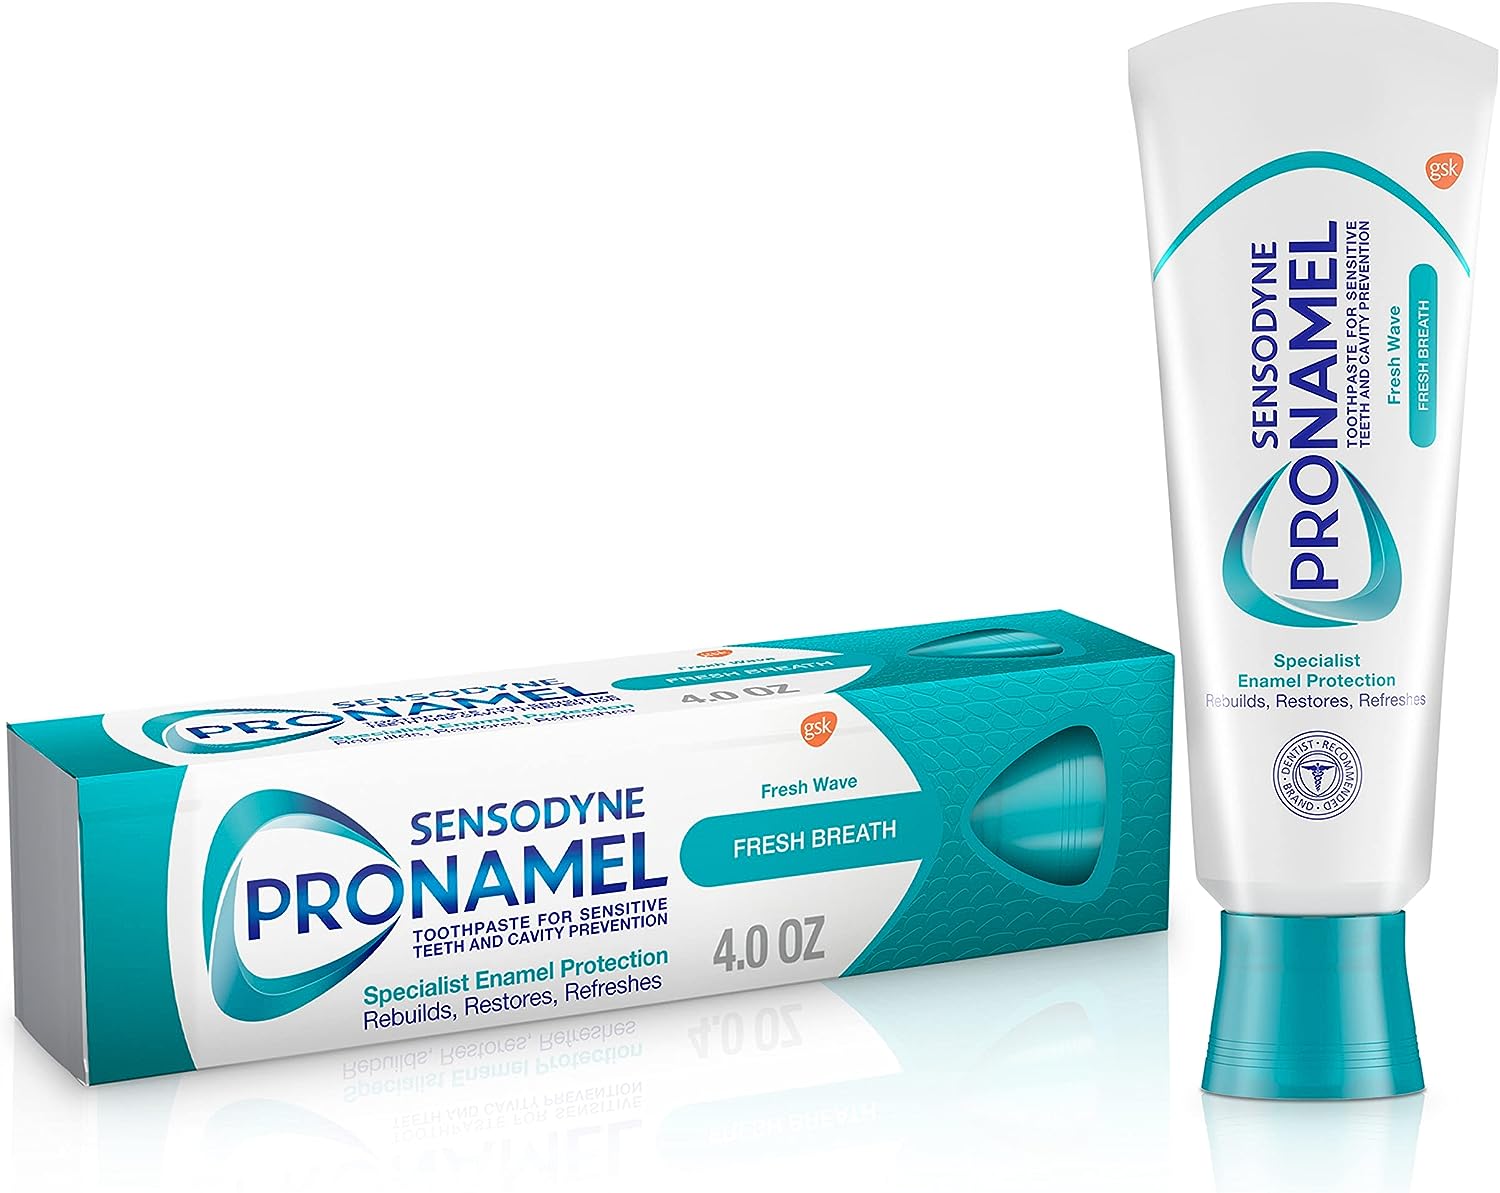 Sensodyne 舒適達 ProNamel 強化琺琅質 清新牙膏，4 oz，原價$6.92，現點擊coupon后僅售 $4.35，免運費。